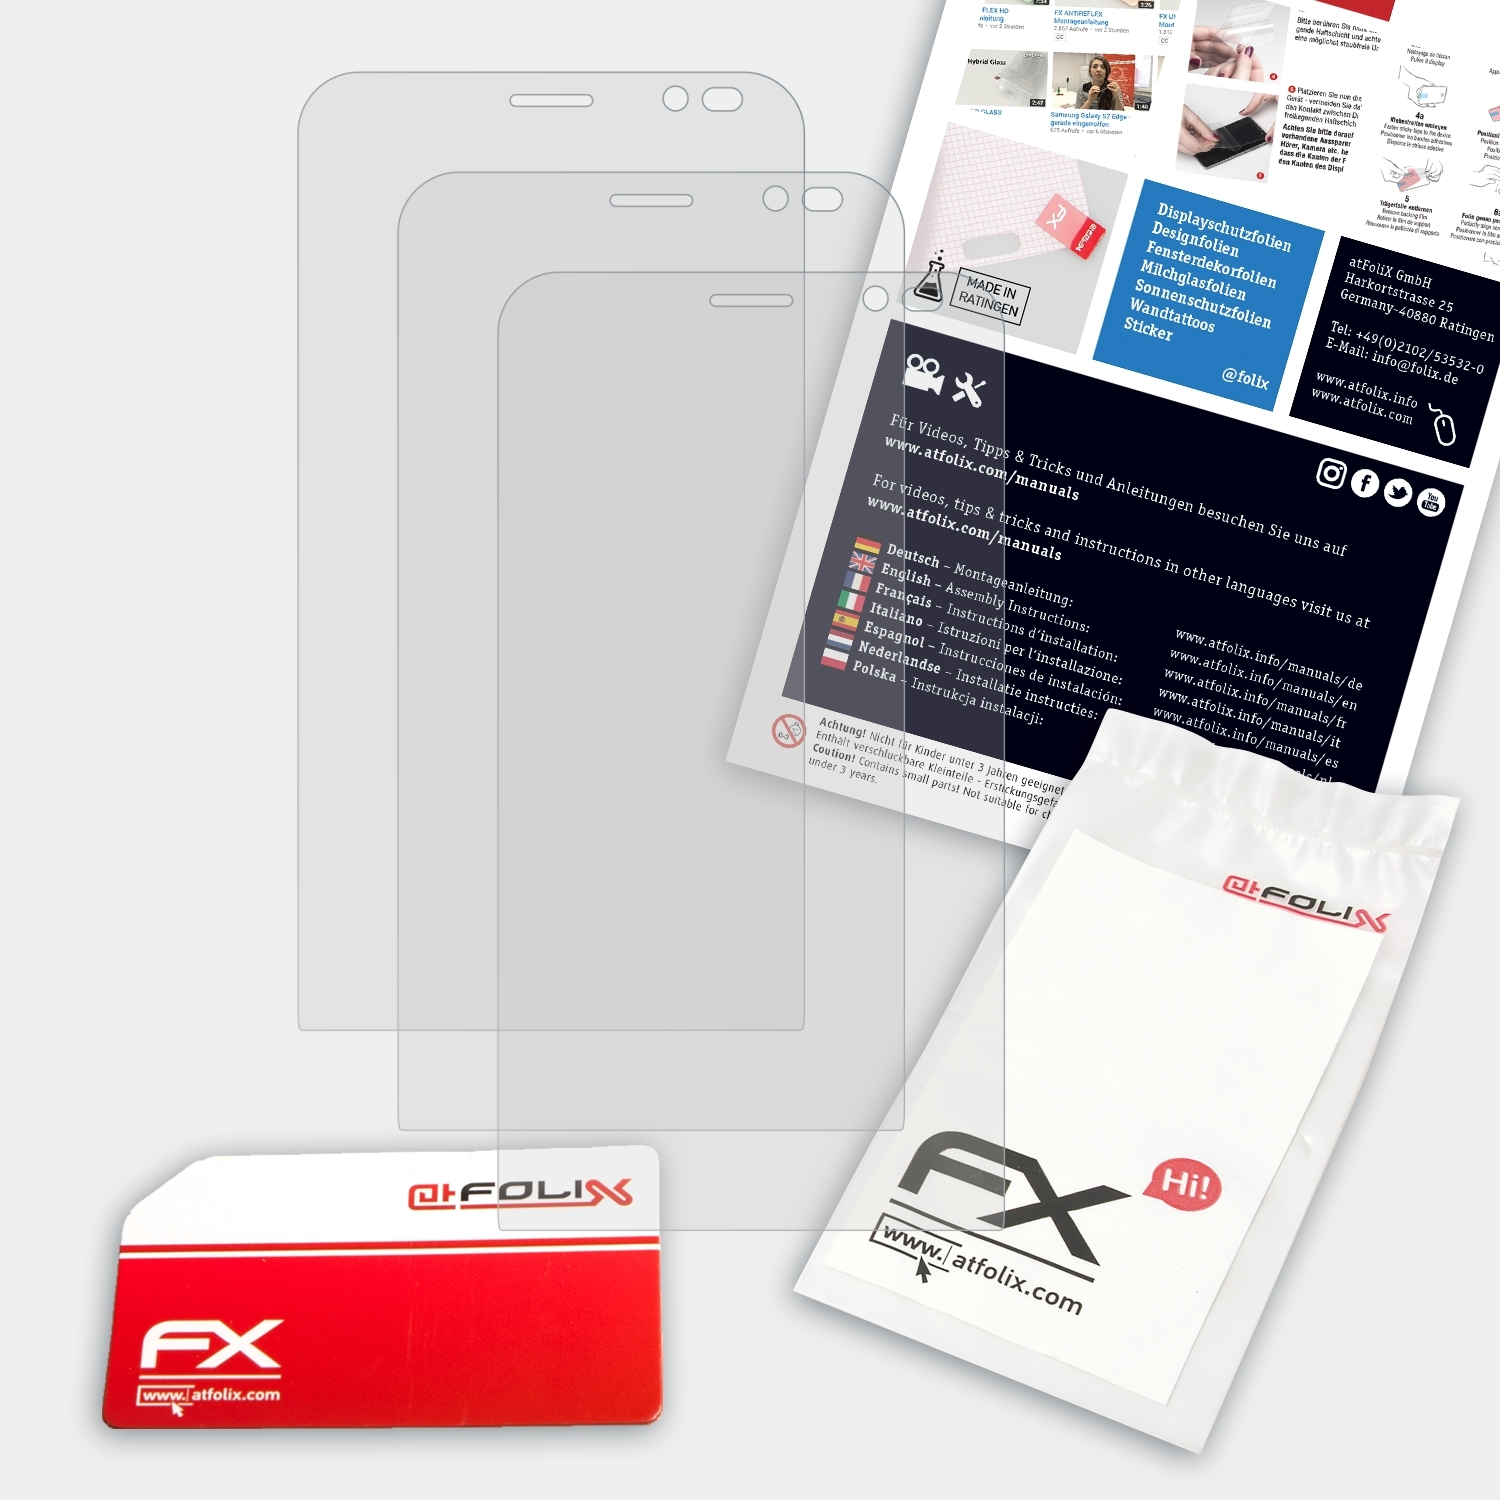 FX-Antireflex 3x ATFOLIX Asus Go ZenFone Displayschutz(für (ZB551KL))